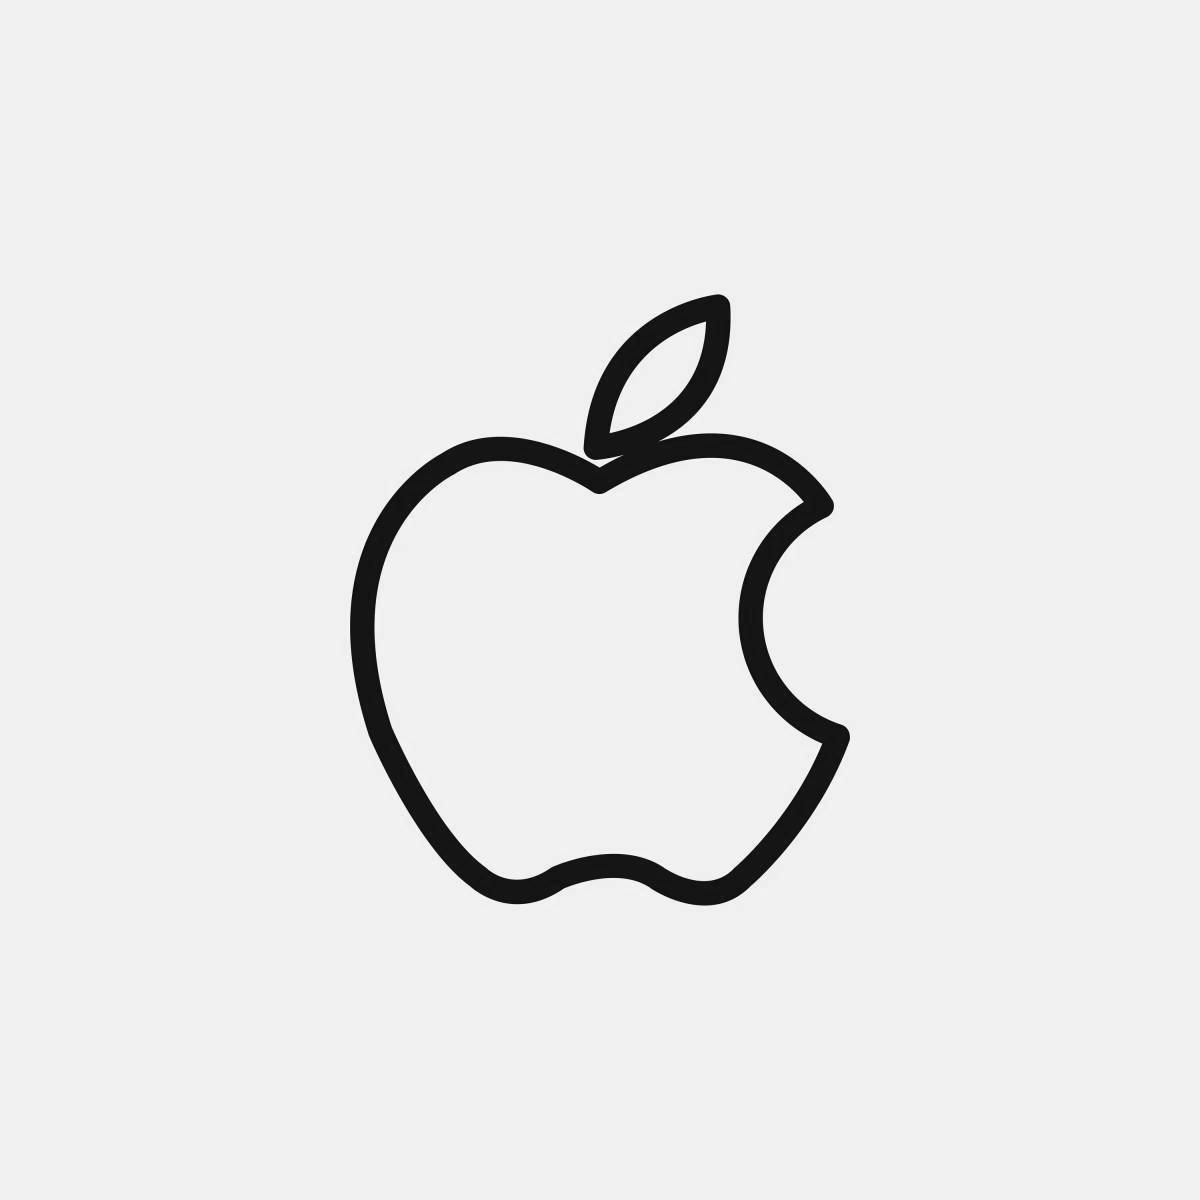 Юмористическая раскраска значка apple